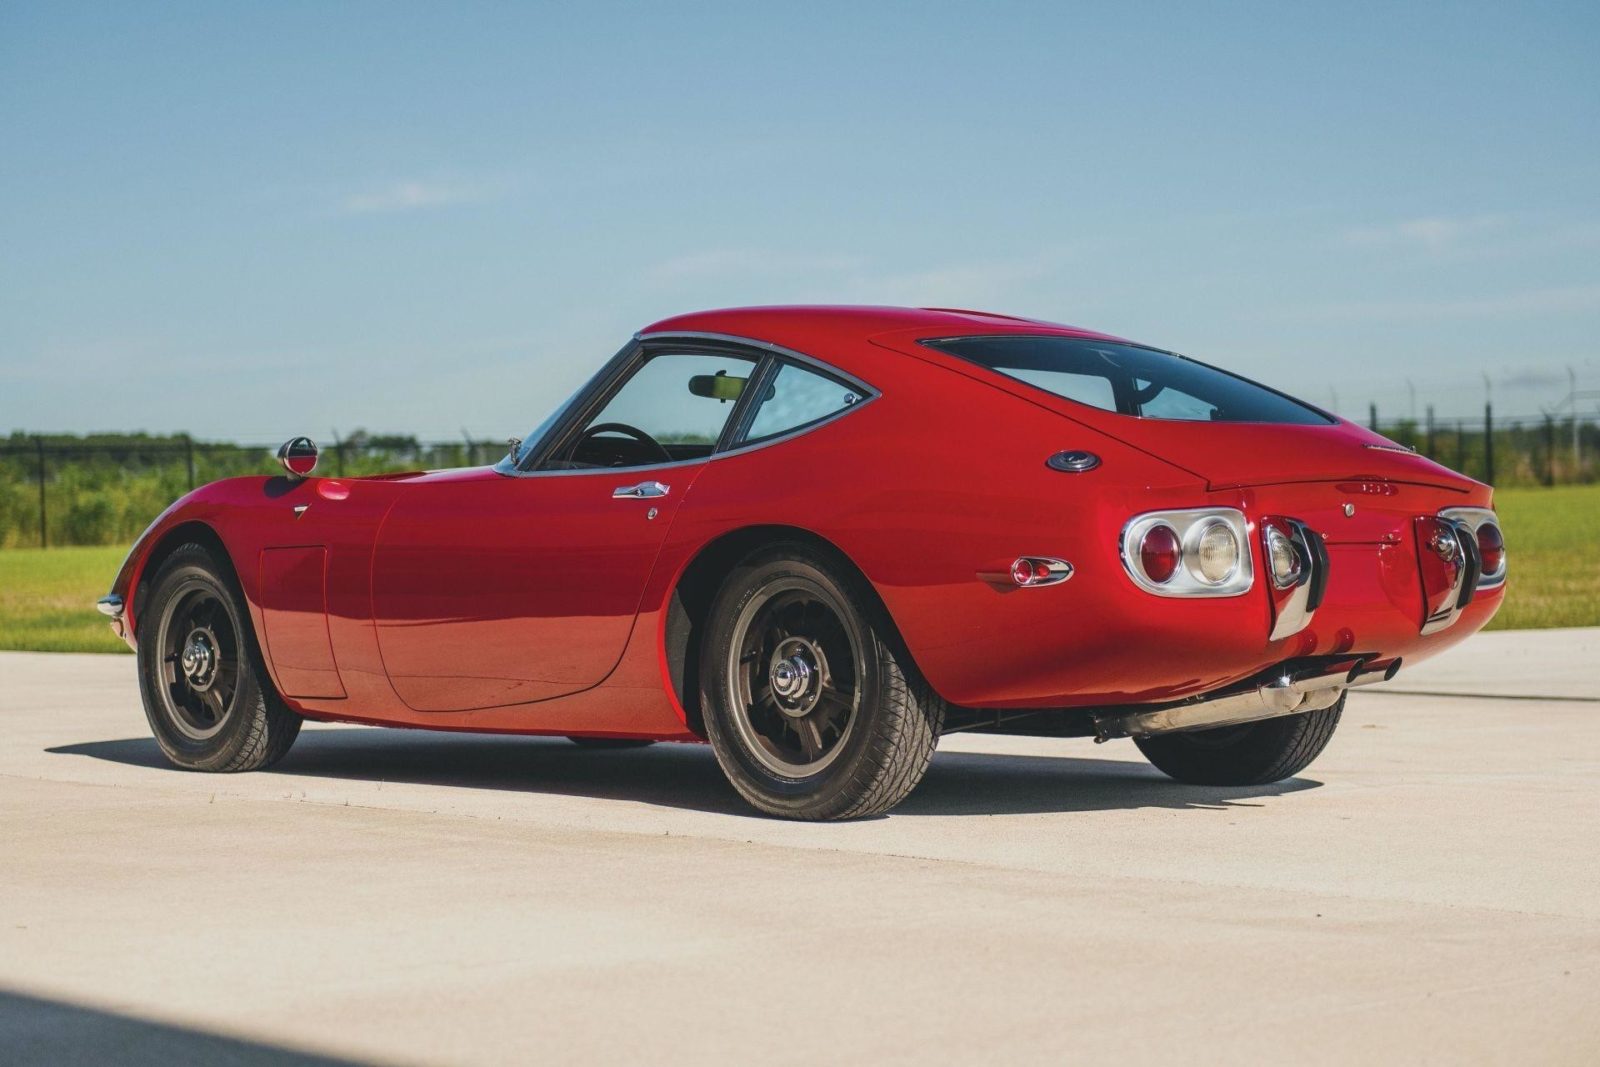 Самое интересное : На аукционе продали легендарную Toyota 2000GT 1967 с левым рулем